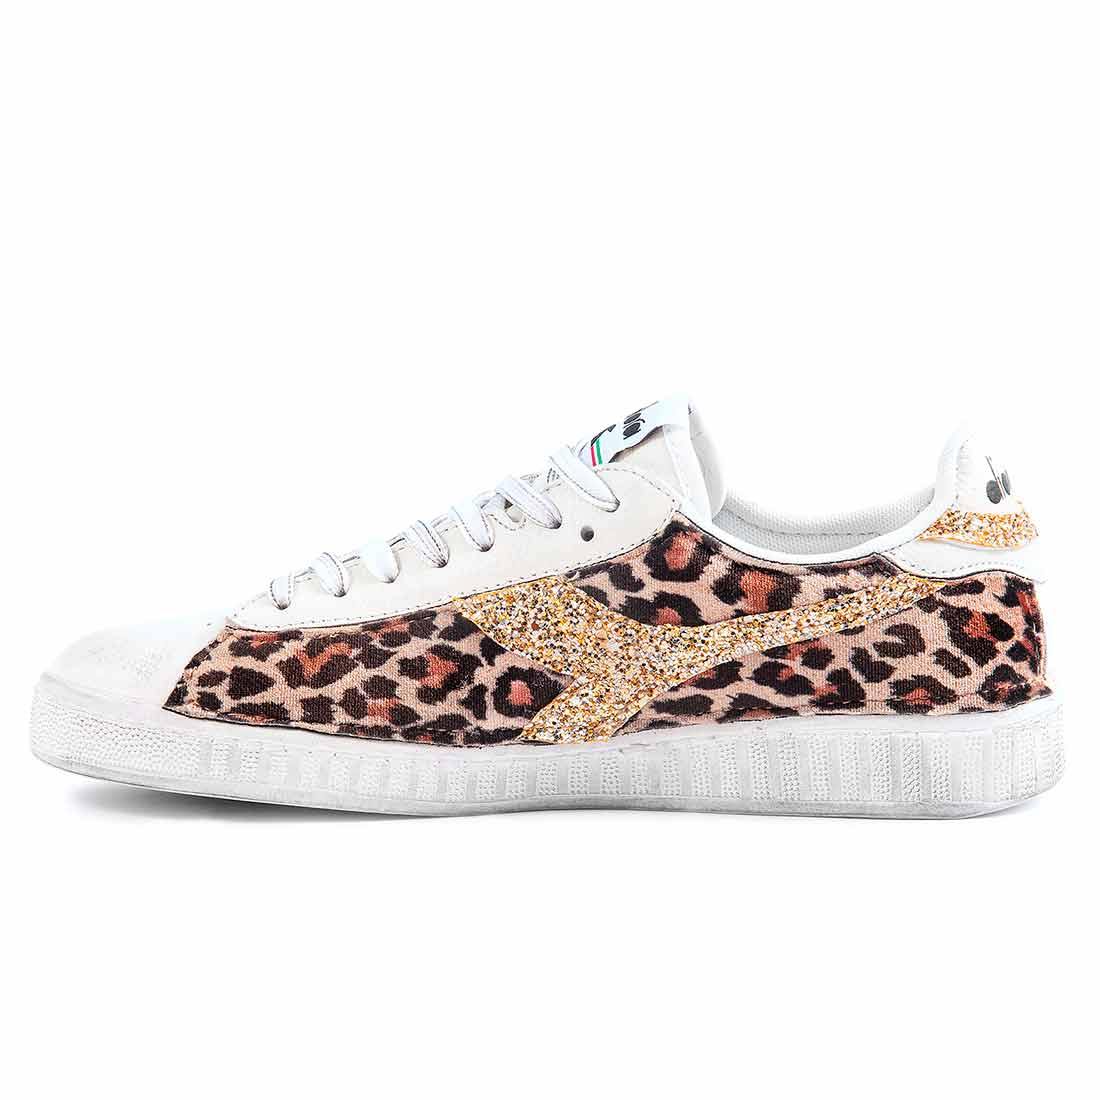 sneakers diadora custom animalier leopardato con brillantini oro